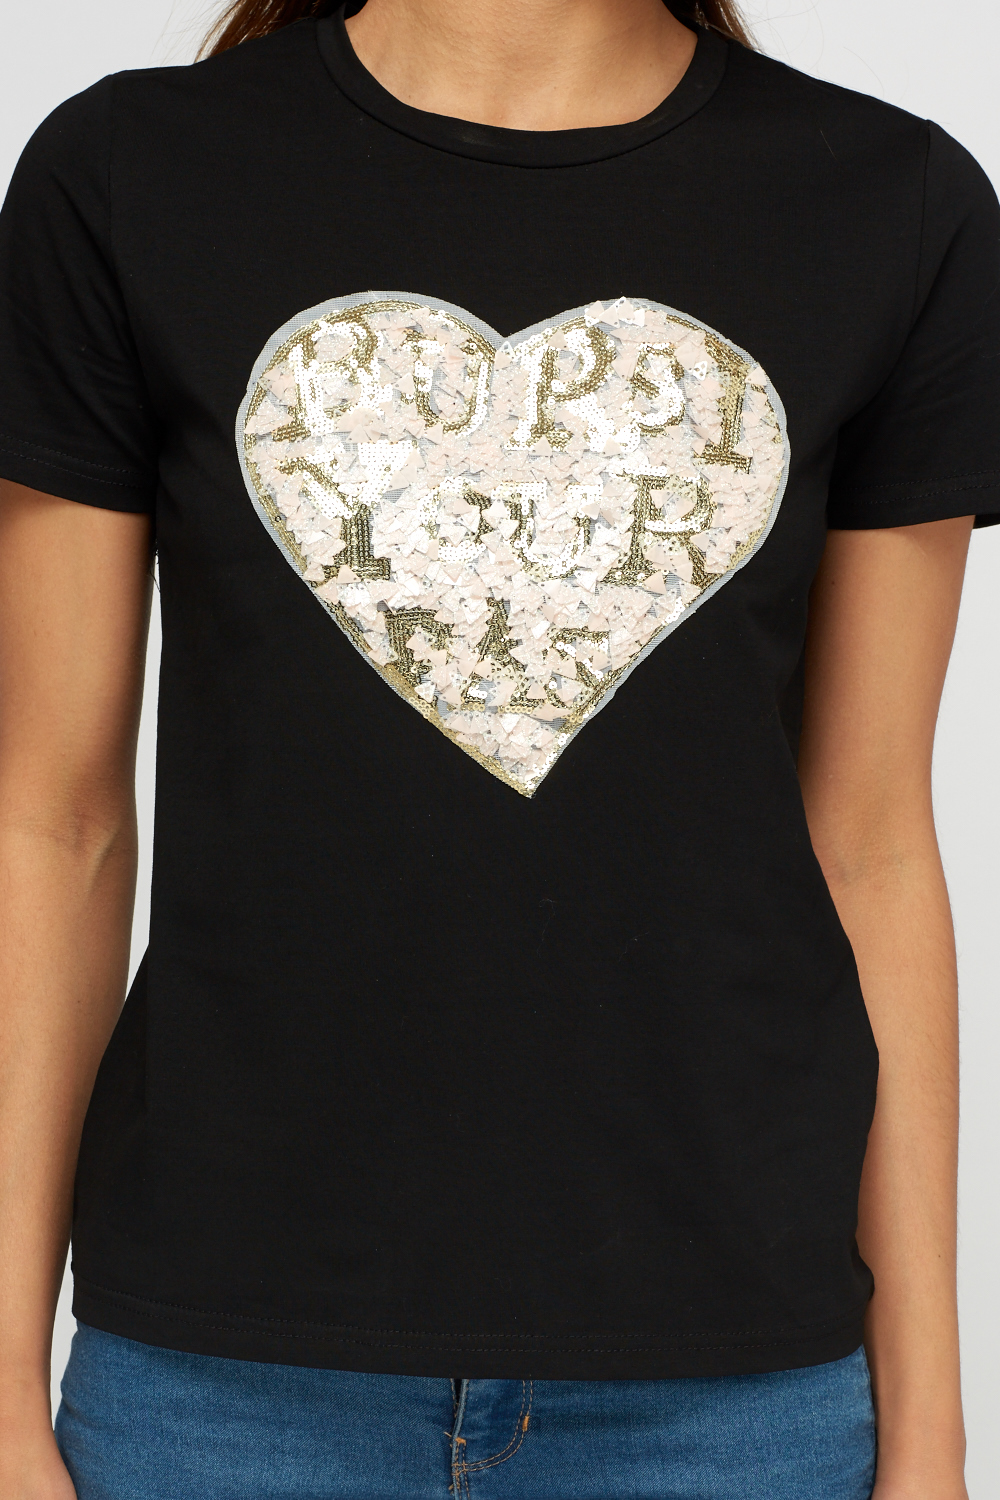 Sequin Heart T-Shirt - Just $6